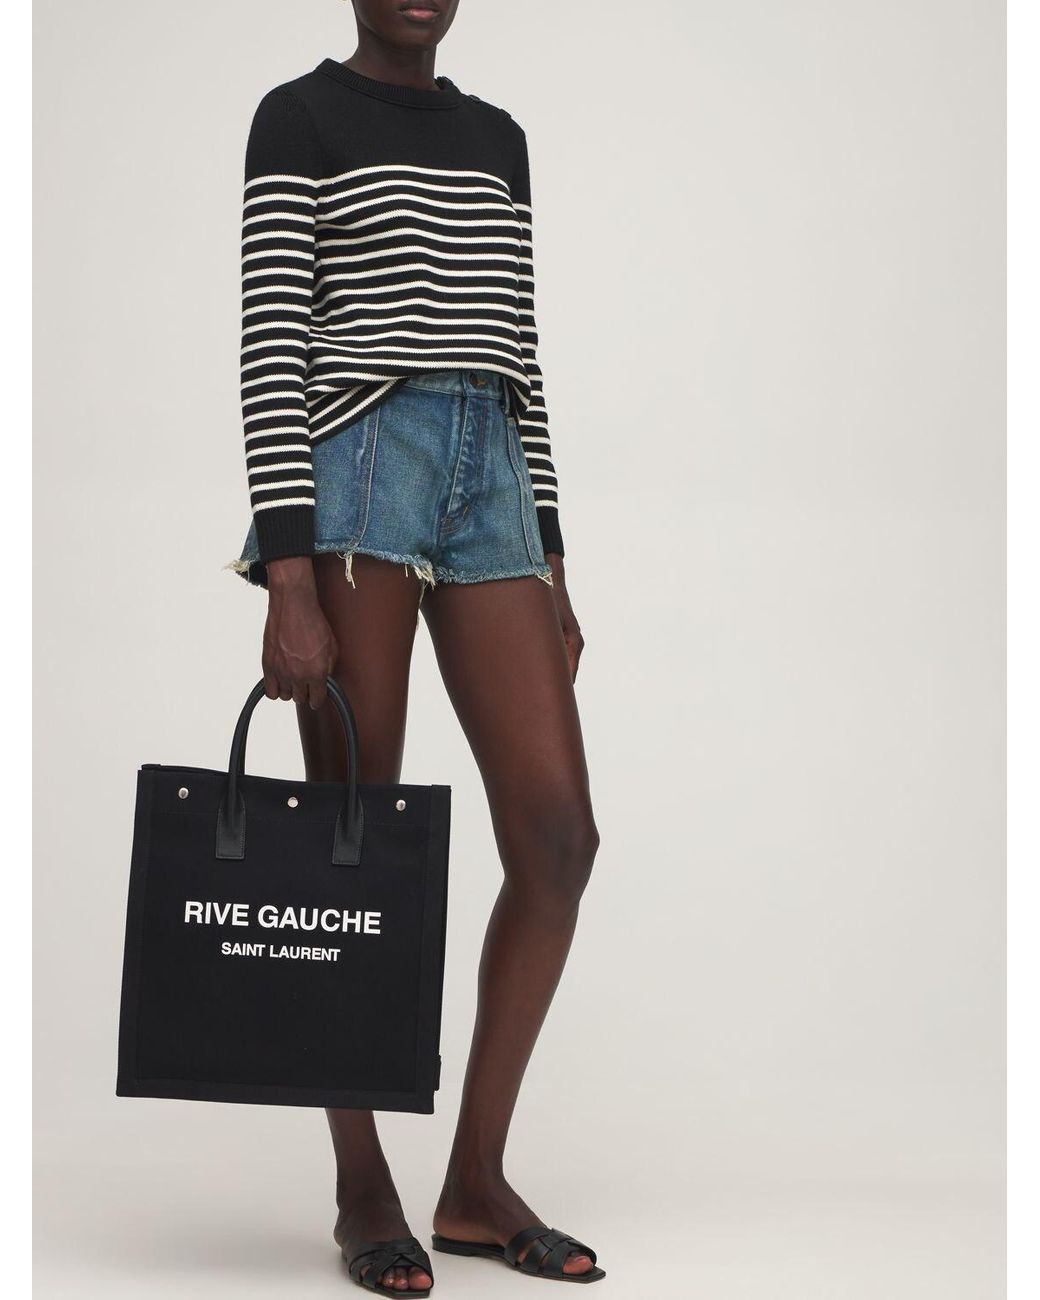 Saint Laurent Rive Gauche Cotton Canvas Tote Bag in Black - Lyst